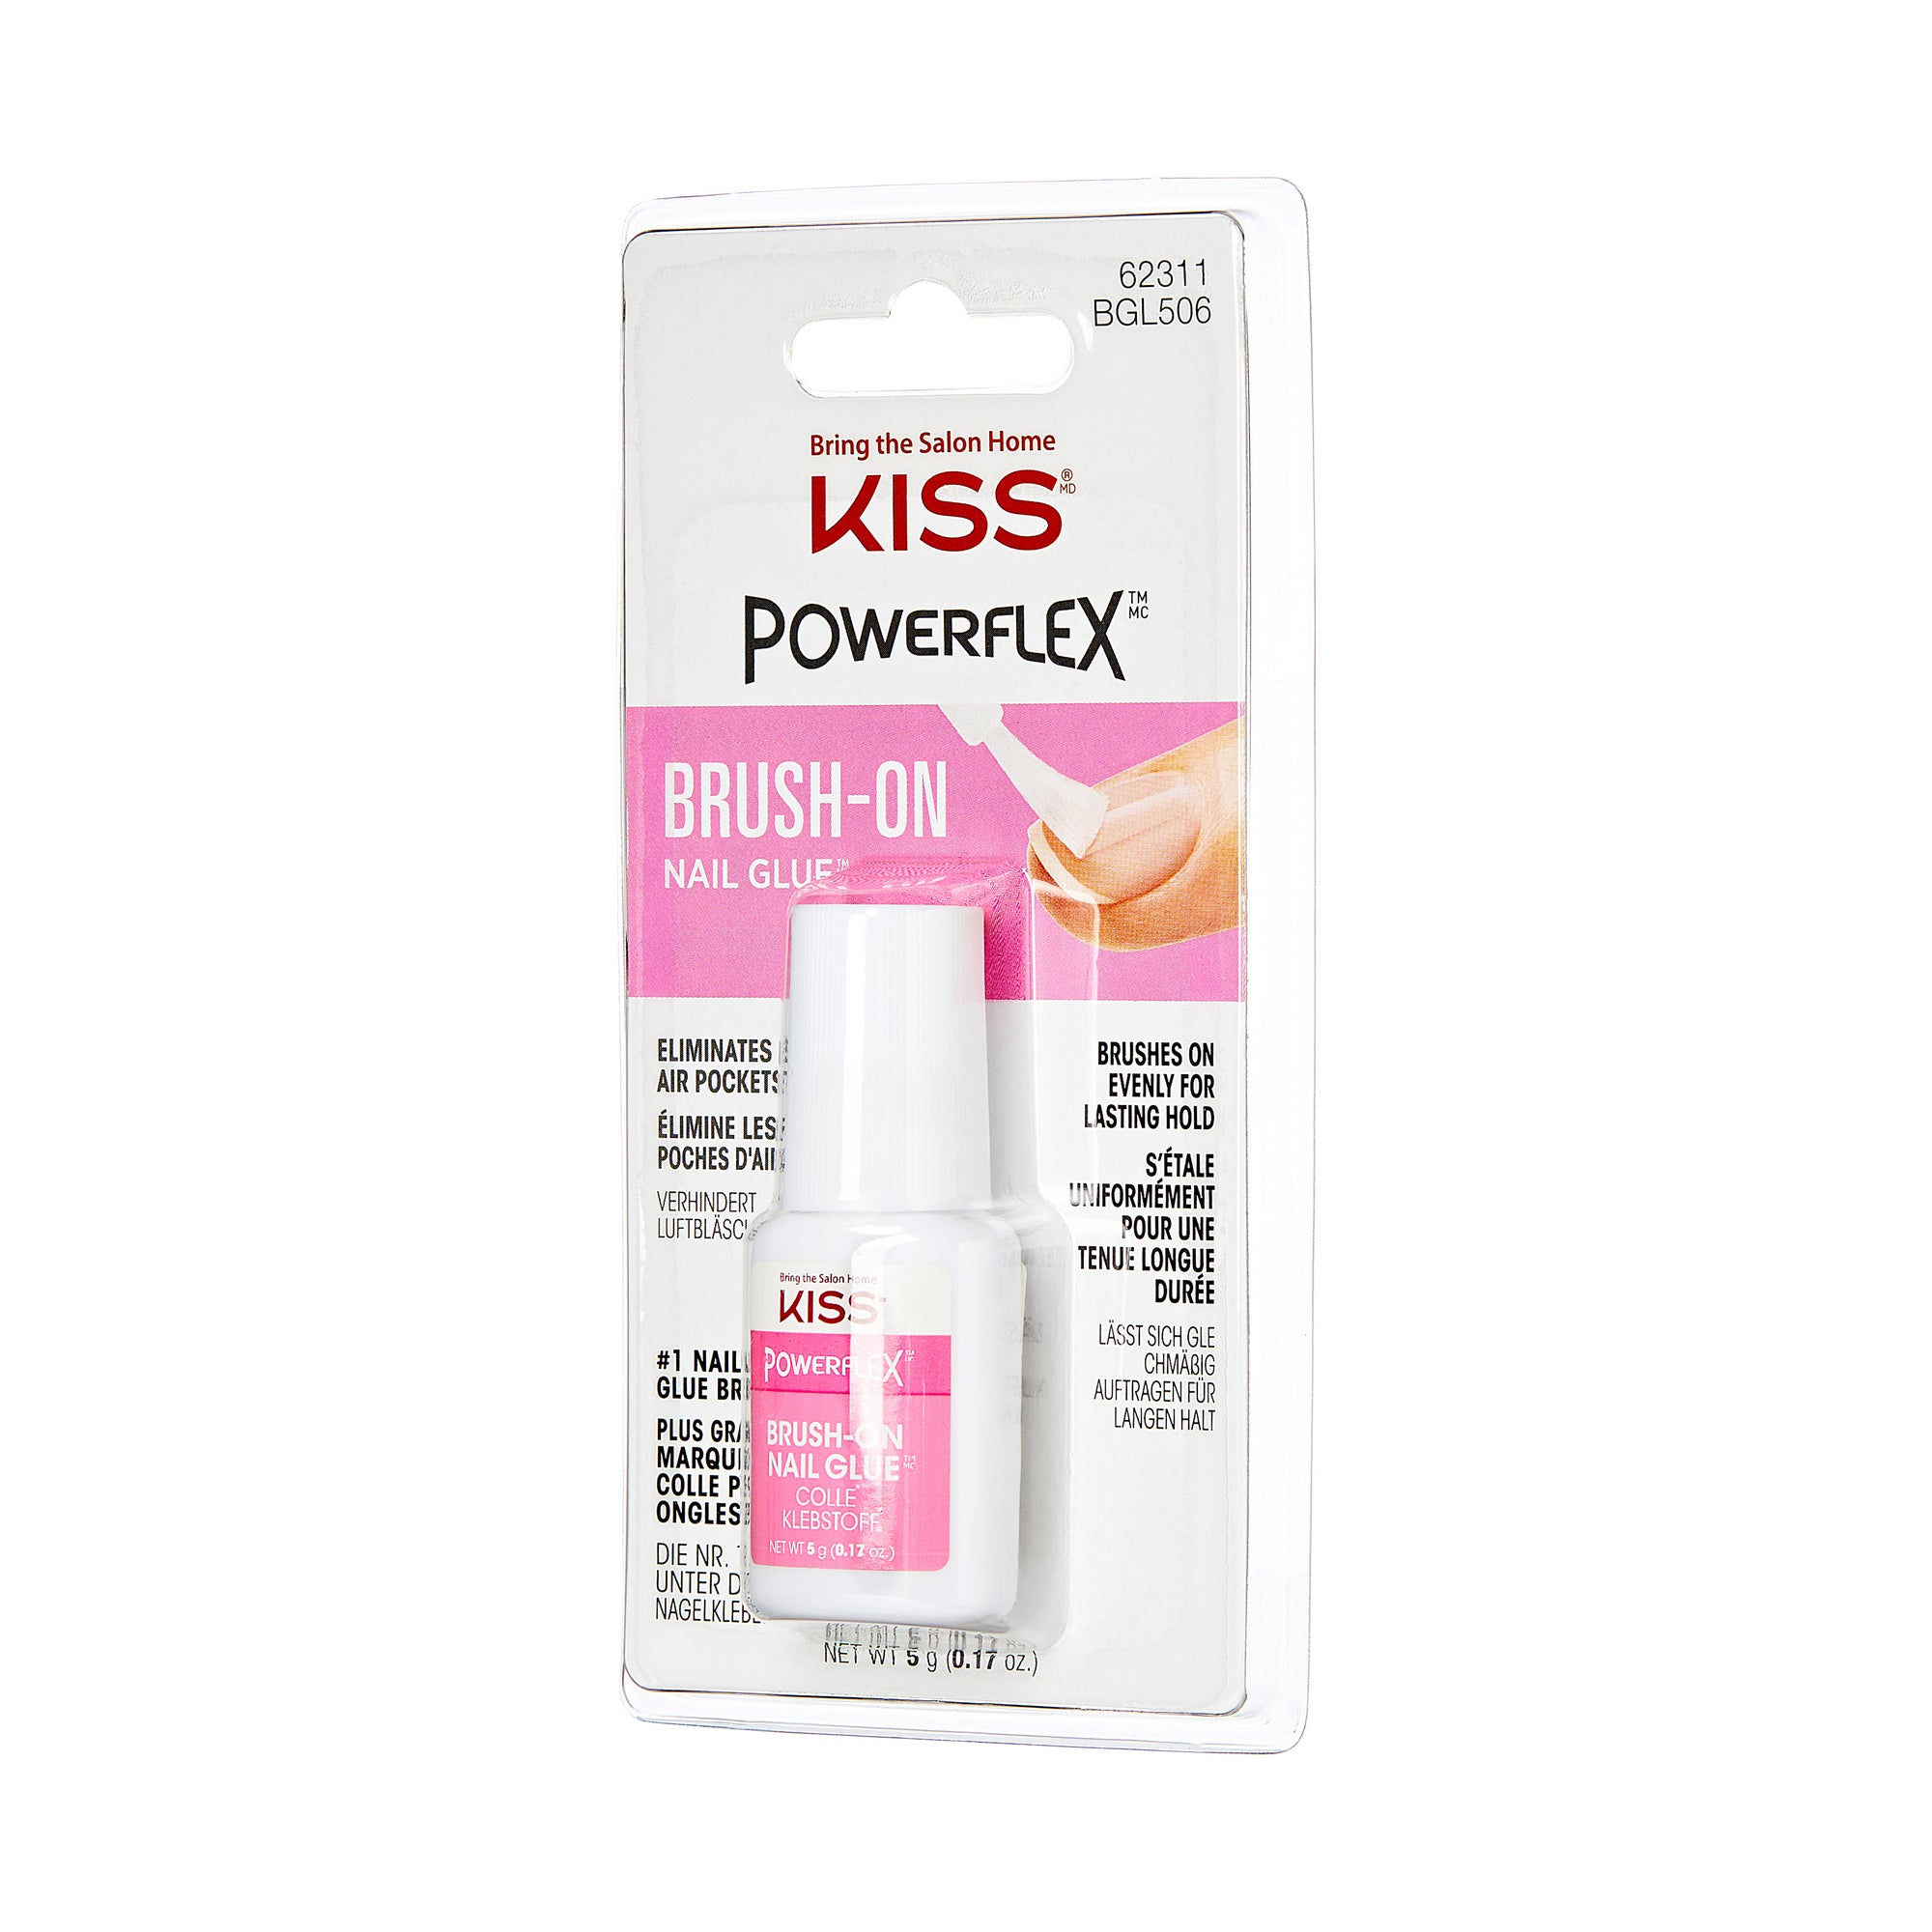 KISS PowerFlex Brush-On Nail Glue - WM Packshot